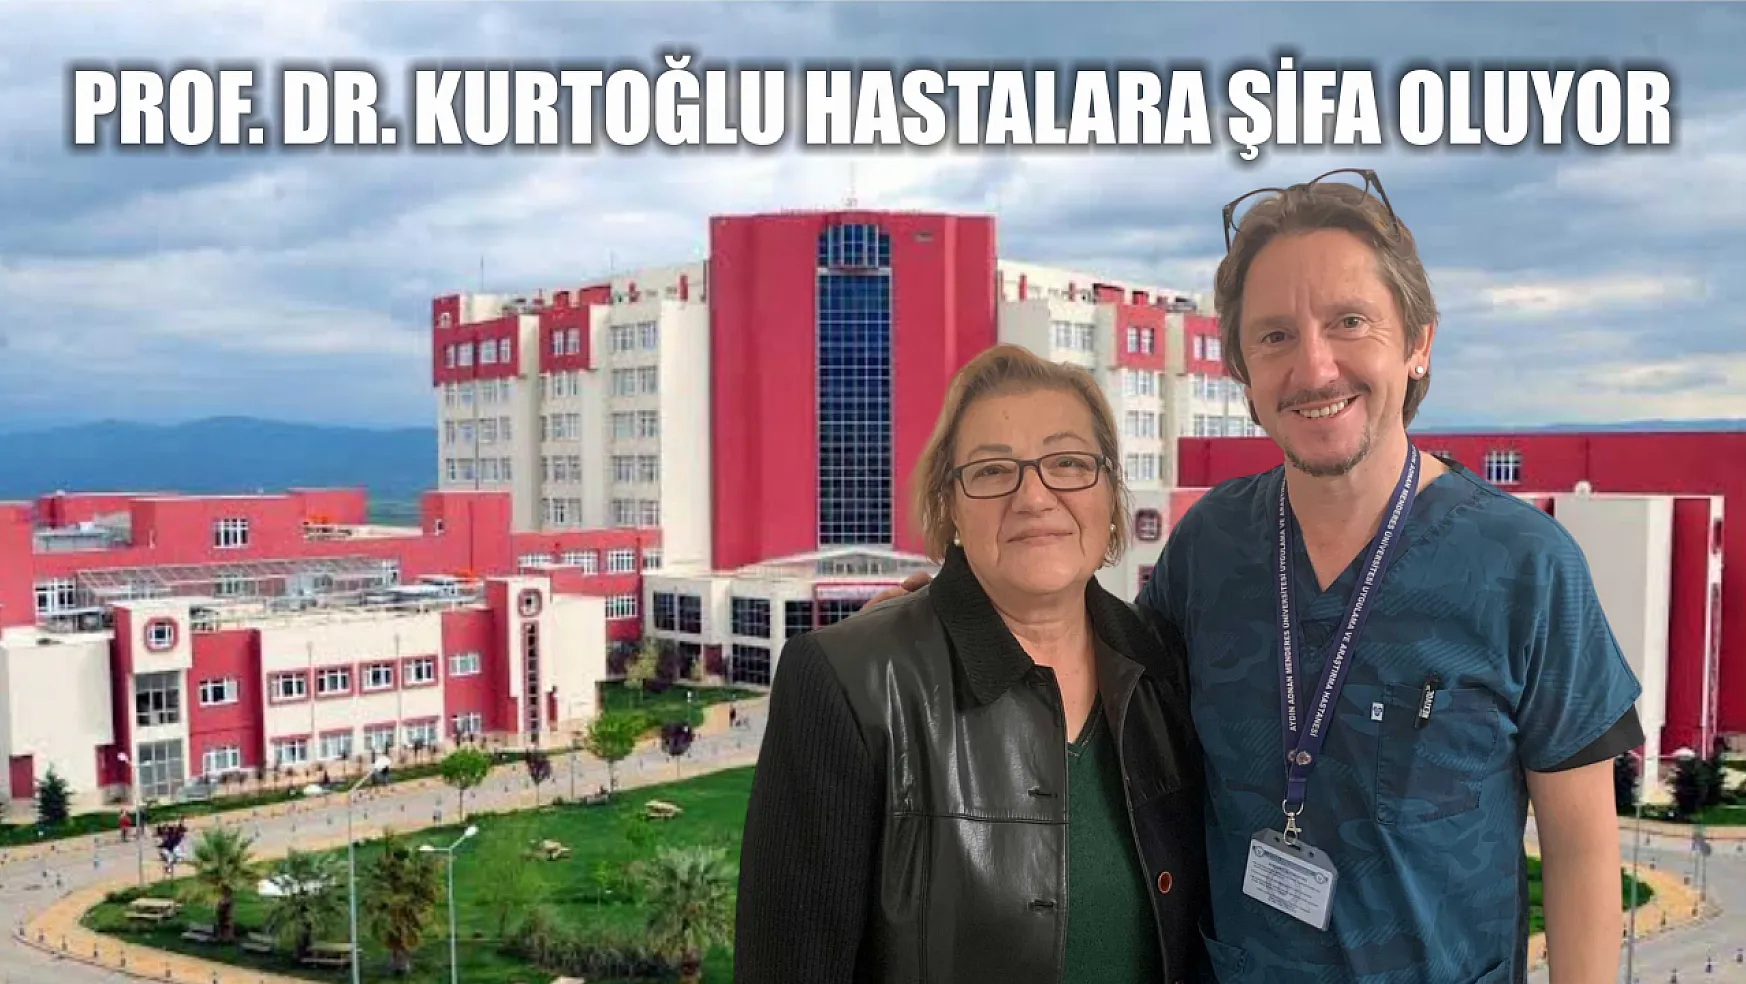 Prof. Dr. Kurtoğlu hastalara şifa oluyor